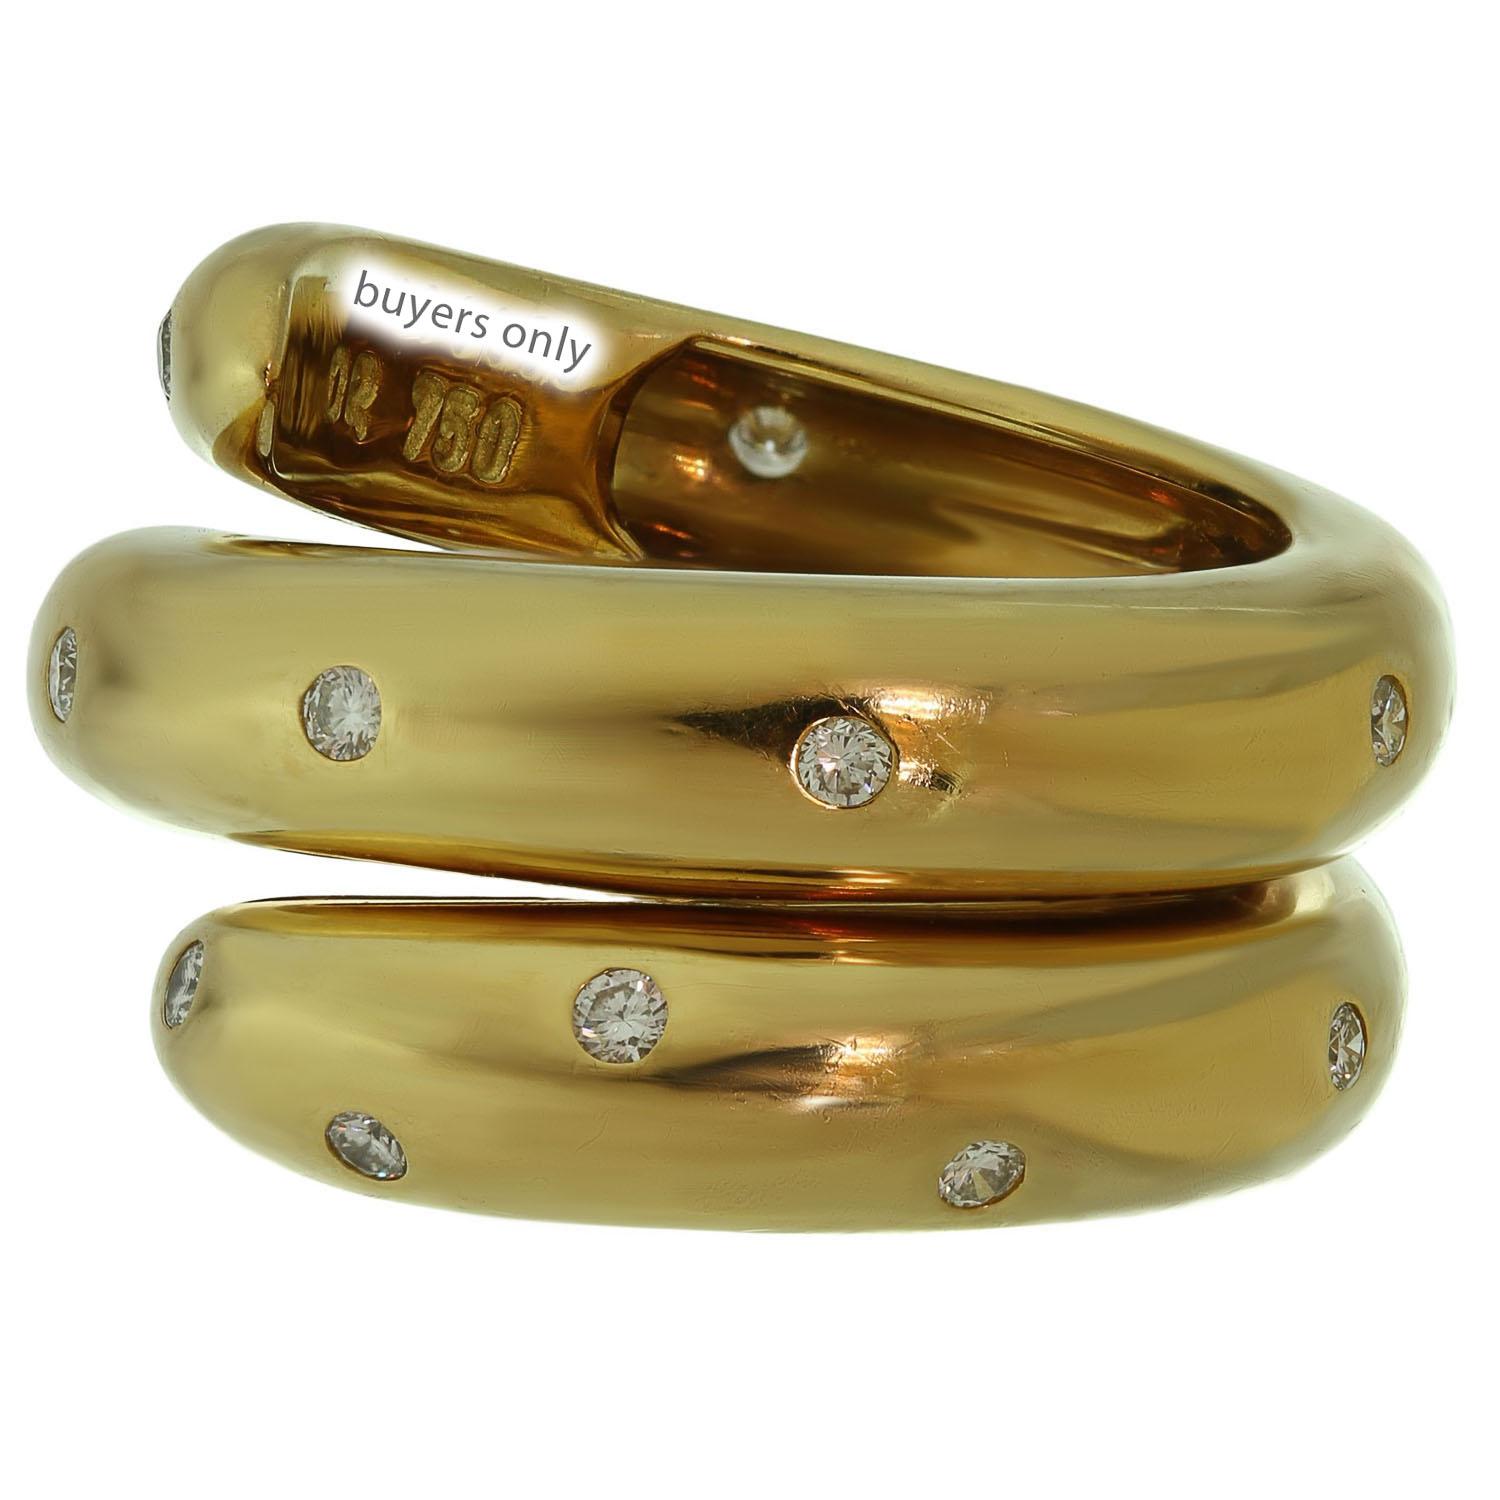 Dieser wunderschöne Chaumet-Ring aus der eleganten Tango-Kollektion ist aus 18 Karat Gelbgold gefertigt und mit runden Diamanten im Brillantschliff (F-G VVS2-VS1) mit einem geschätzten Gewicht von 0,40 Karat besetzt. Hergestellt in Frankreich in den